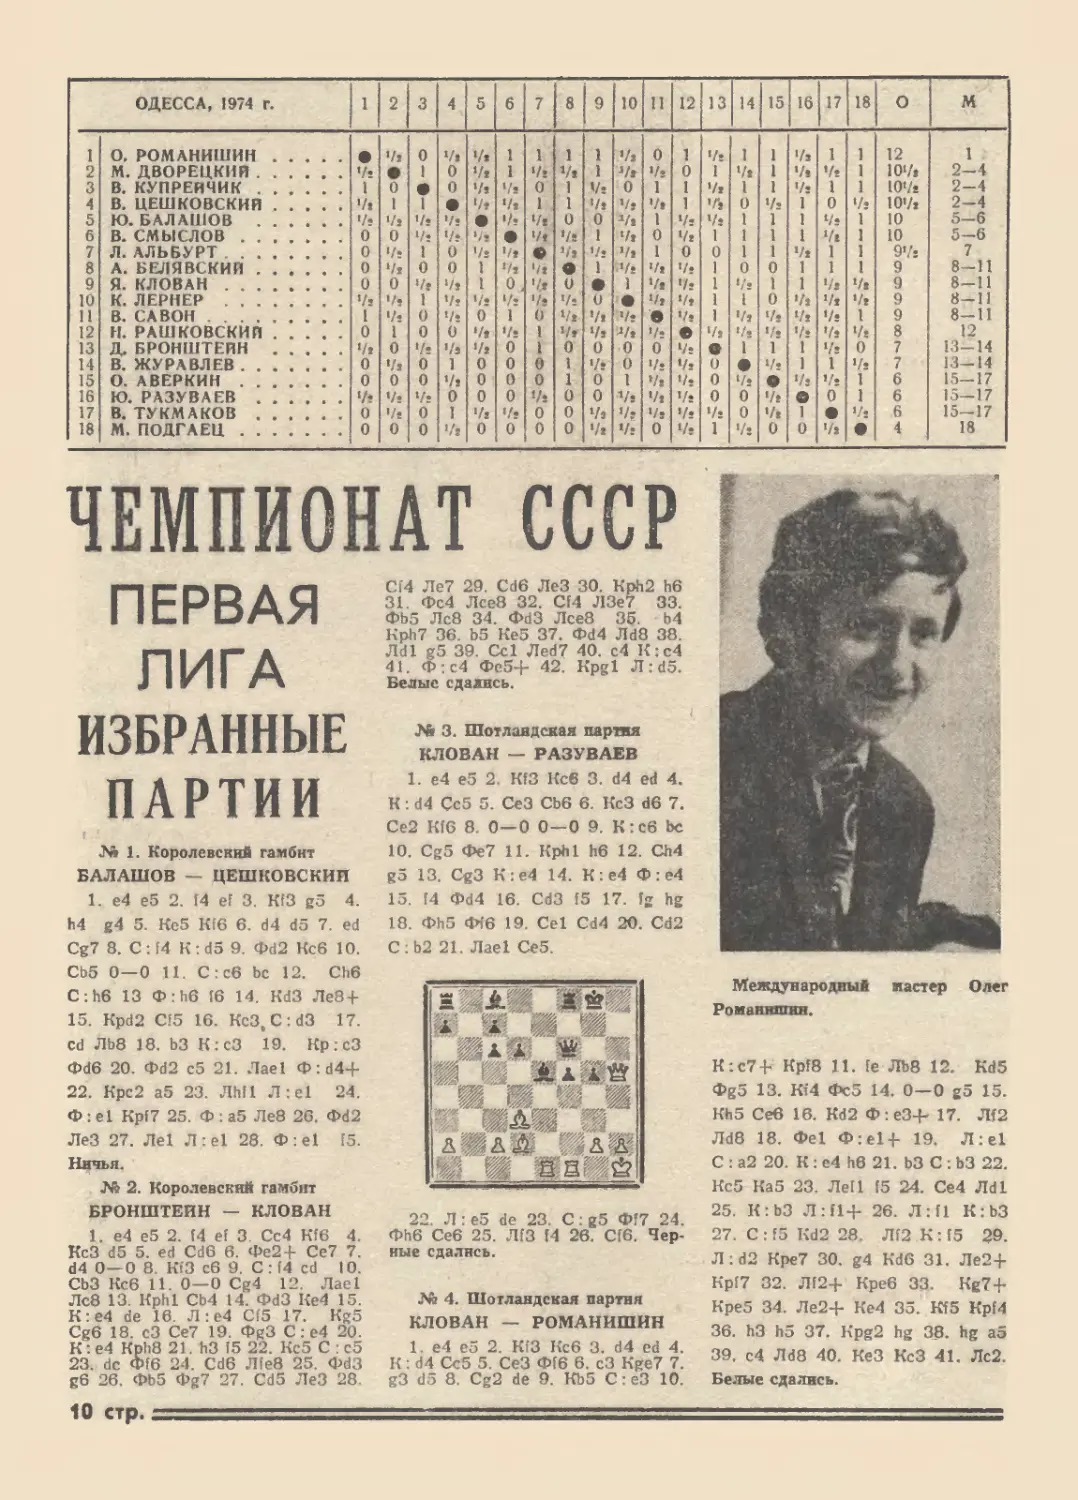 Чемпионат СССР Первая лига, Одесса, 1974 г.
Избранные партии